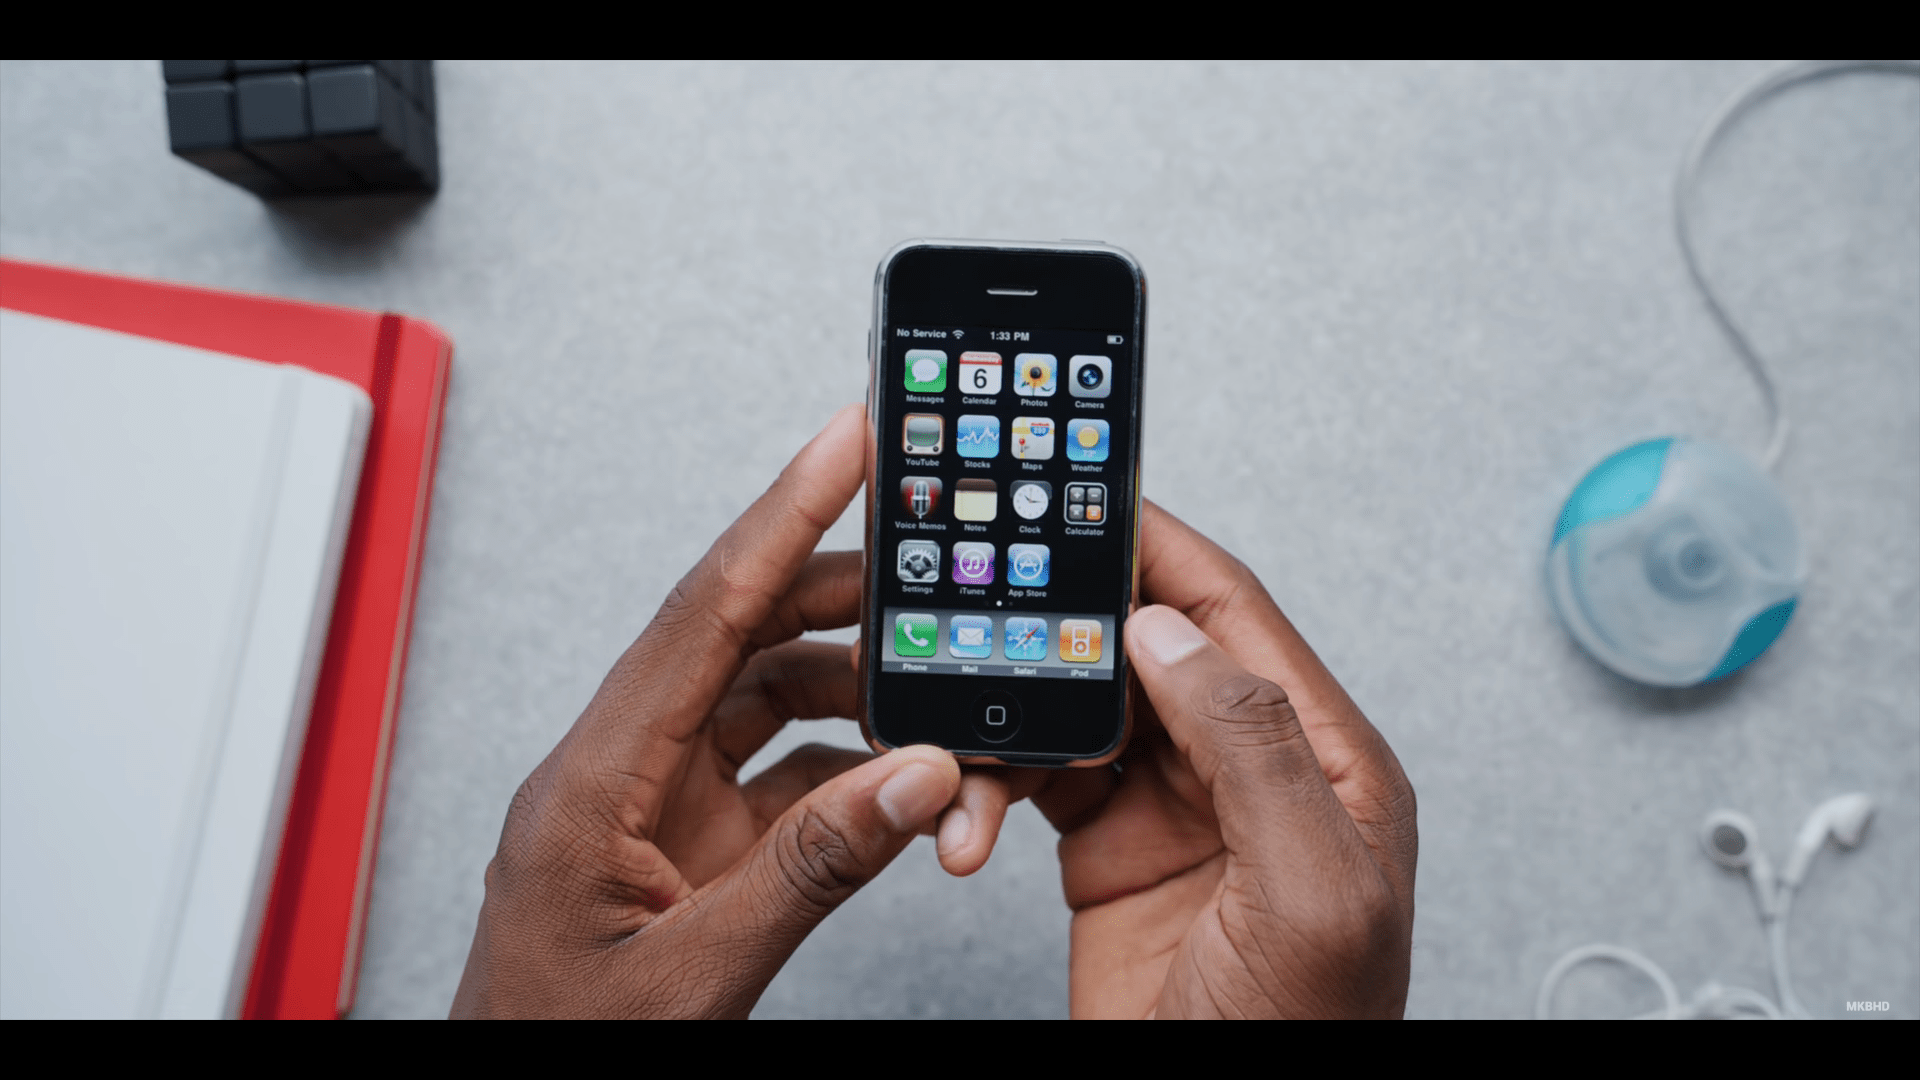 So sánh iPhone 11 Pro và iPhone 1: Nhiều thay đổi và phát triển, nhưng vẫn có thứ trường tồn và làm nên thương hiệu "iPhone"